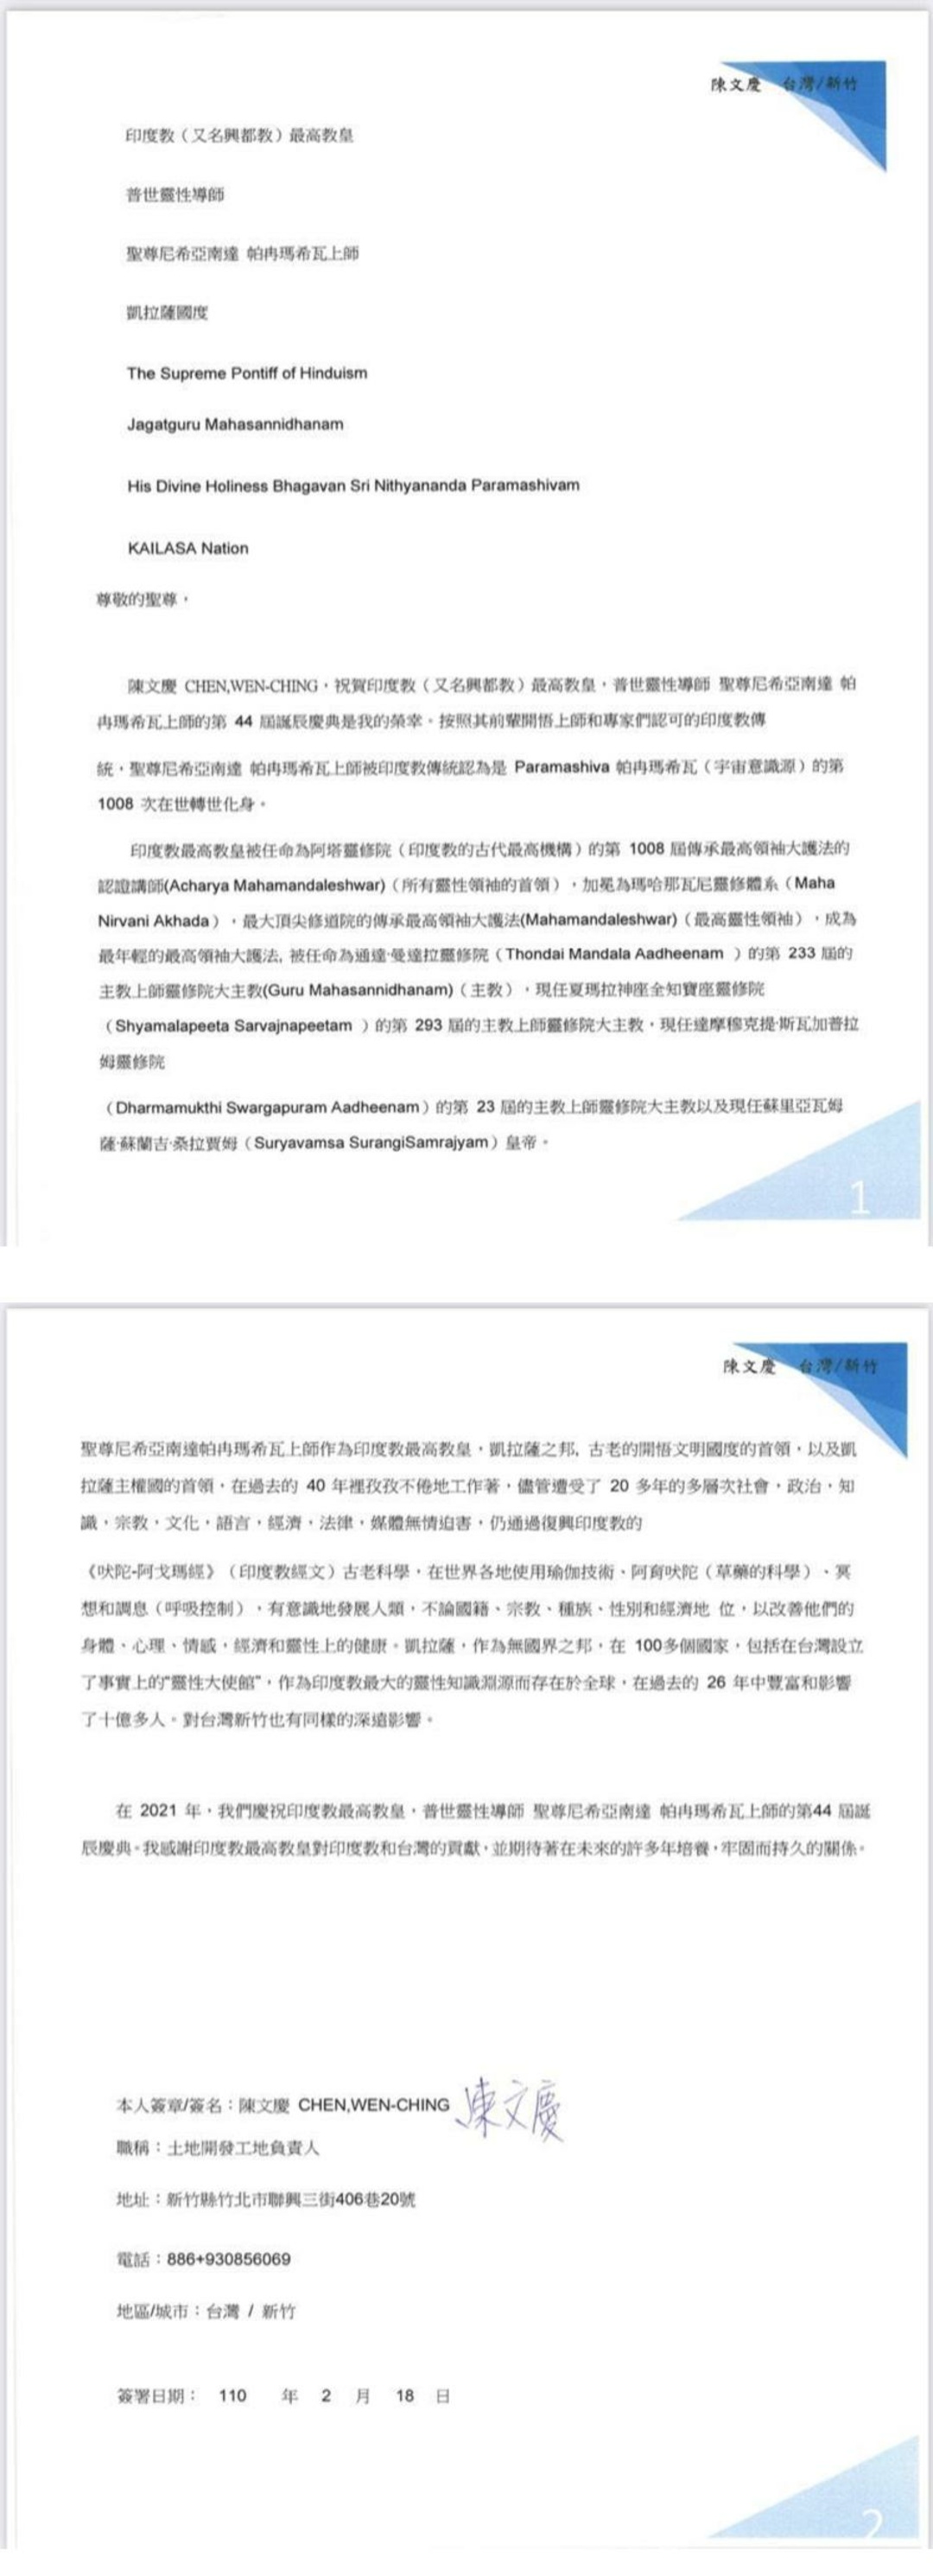 Taiwan---Chen-Wen-Ching---Feb-18--2021-(Proclamation)-1C5fCSs8aZGX9Pes9XCgiffxEojAVrUVB.pdf